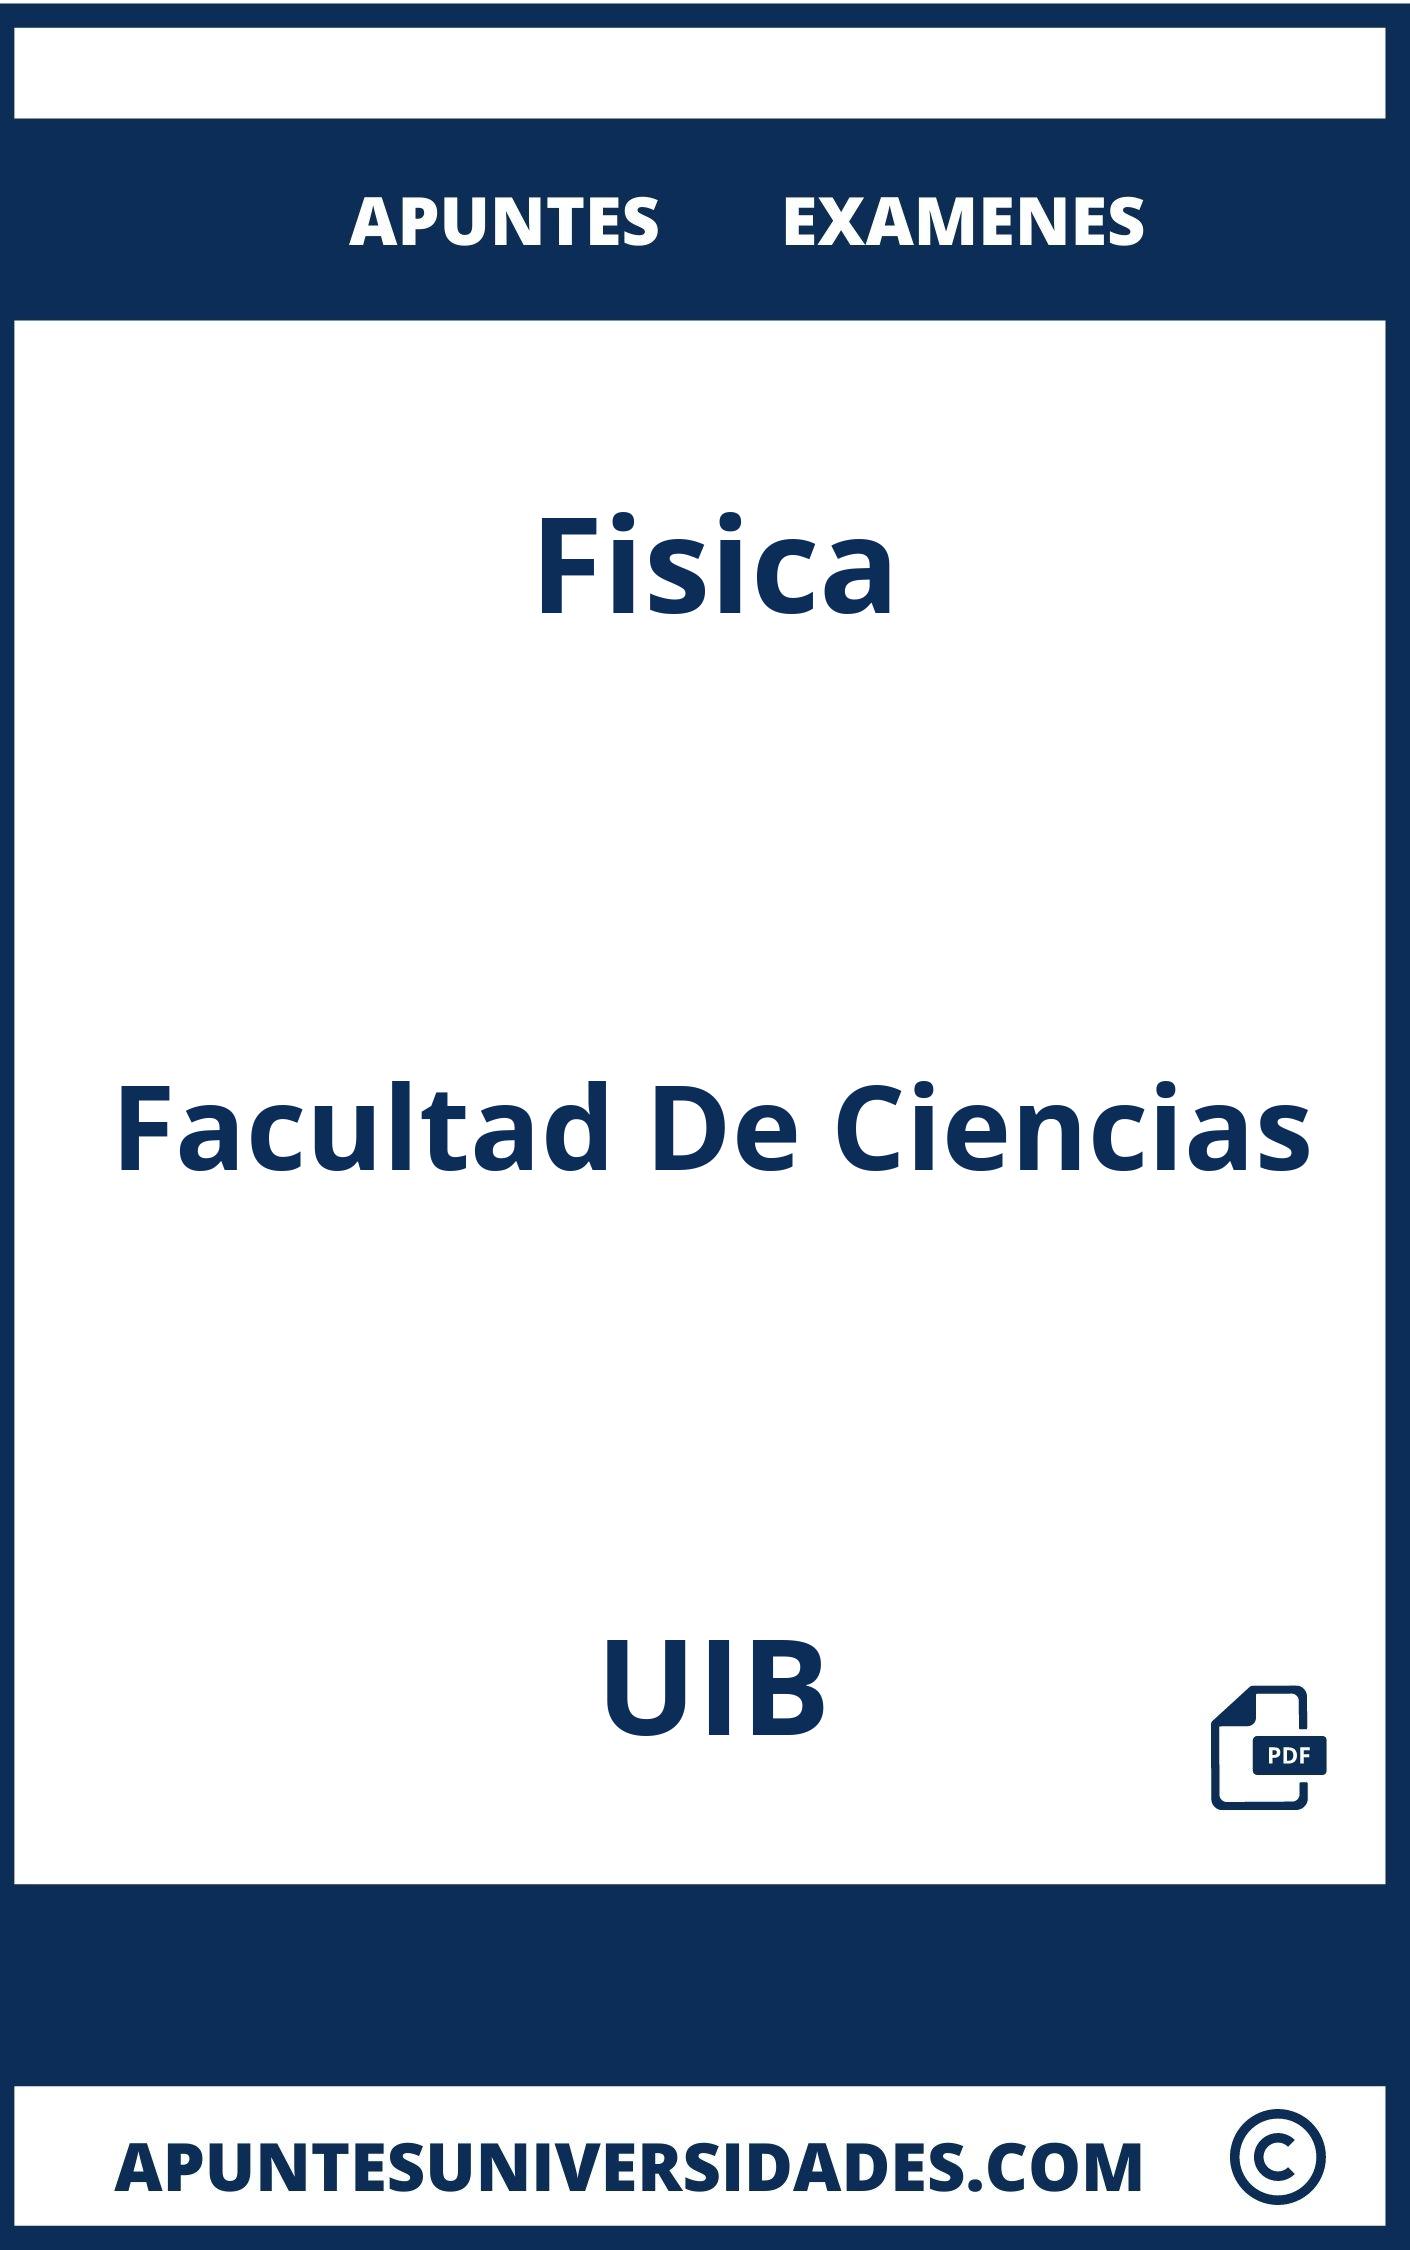 Apuntes y Examenes Fisica UIB